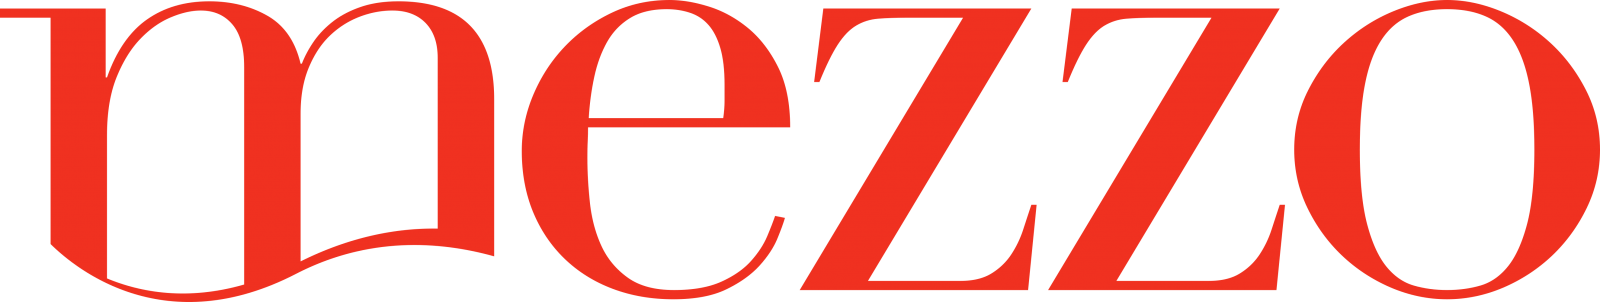 логотип телеканала MEZZO